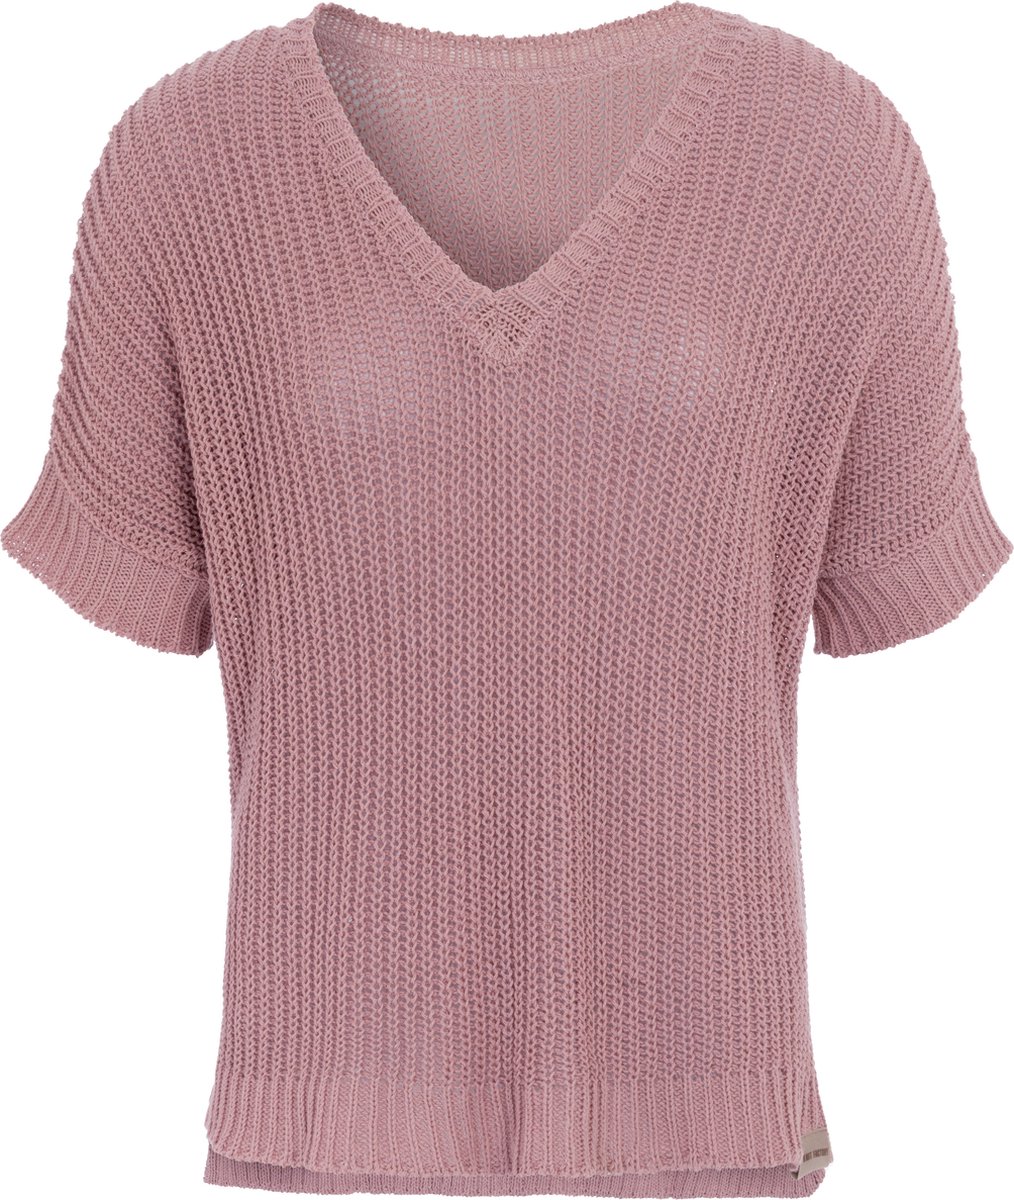 Knit Factory Daisy Gebreide Dames Top - Trui met korte mouwen - Gebreide t-shirt - T-shirt - Shirt gemaakt van 80% gerecyceld katoen - Duurzaam & milieuvriendelijk - Korte mouw - V-hals - Oud Roze - 36/44